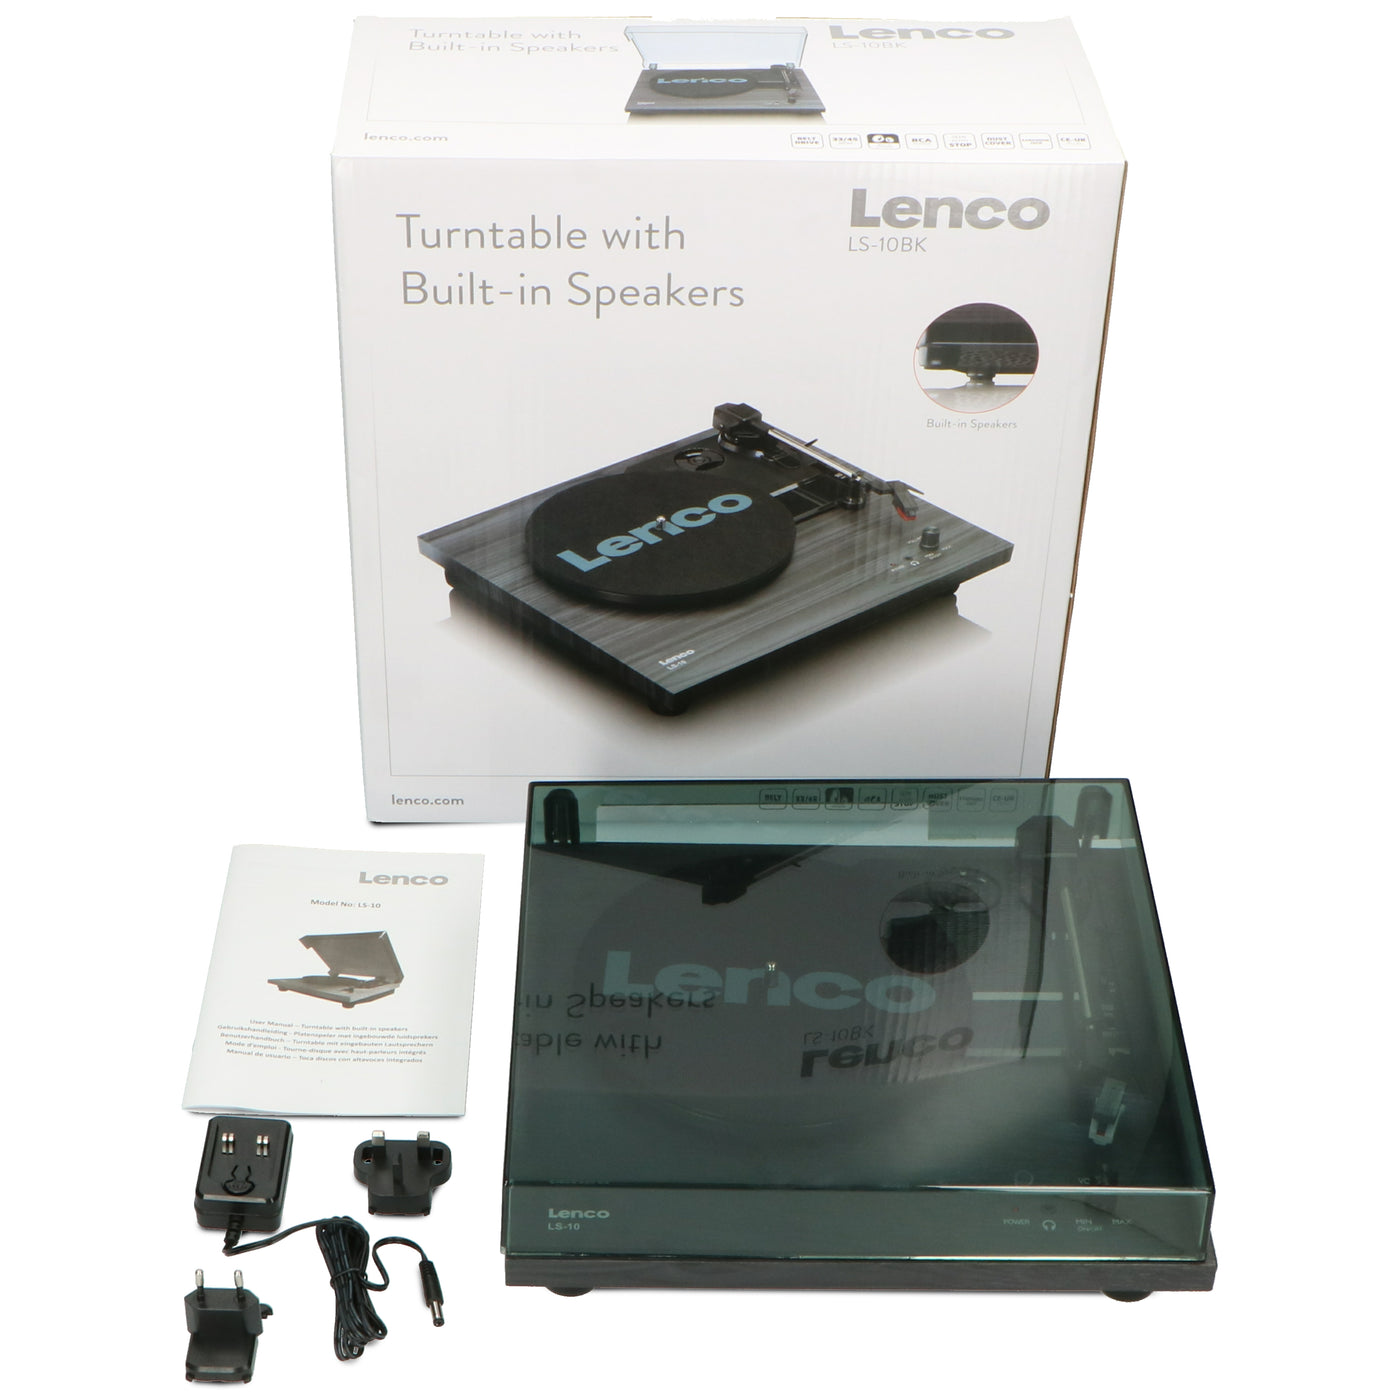 Lenco LS-10BK - Plattenspieler mit Riemenantrieb und Holzgehäuse - eingebaute Lautsprecher - Kopfhöreranschluß - Schwarz